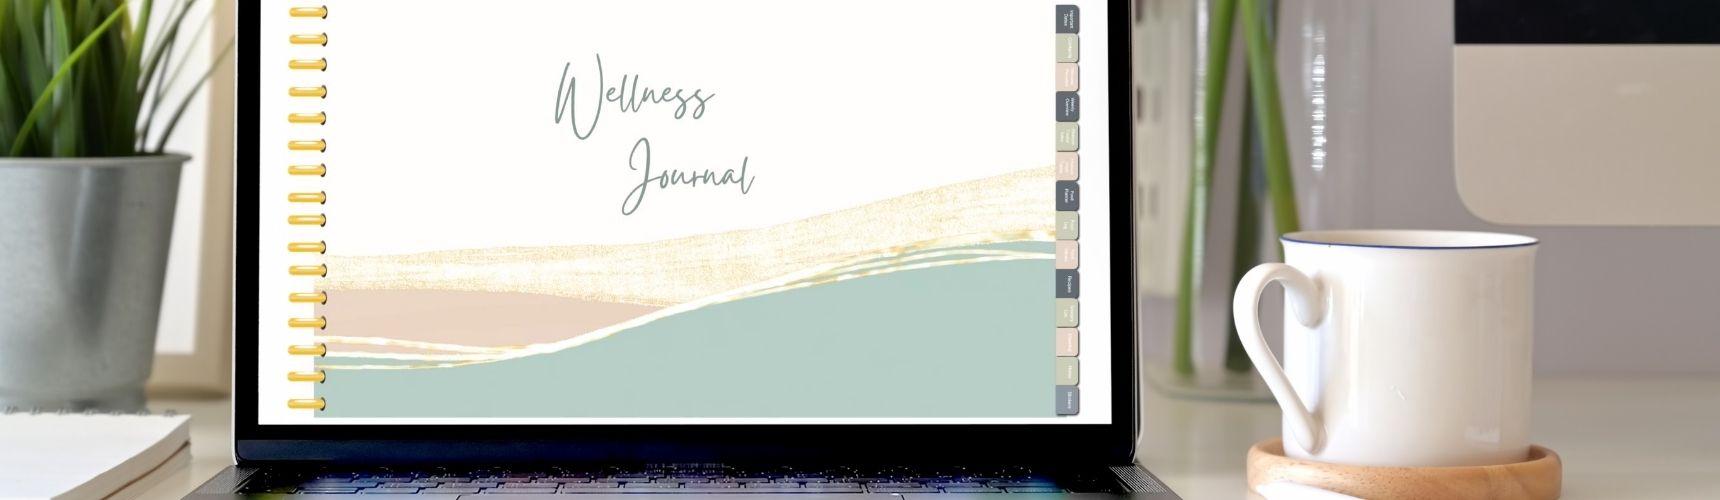 Digital Wellness Journal Shop Cover